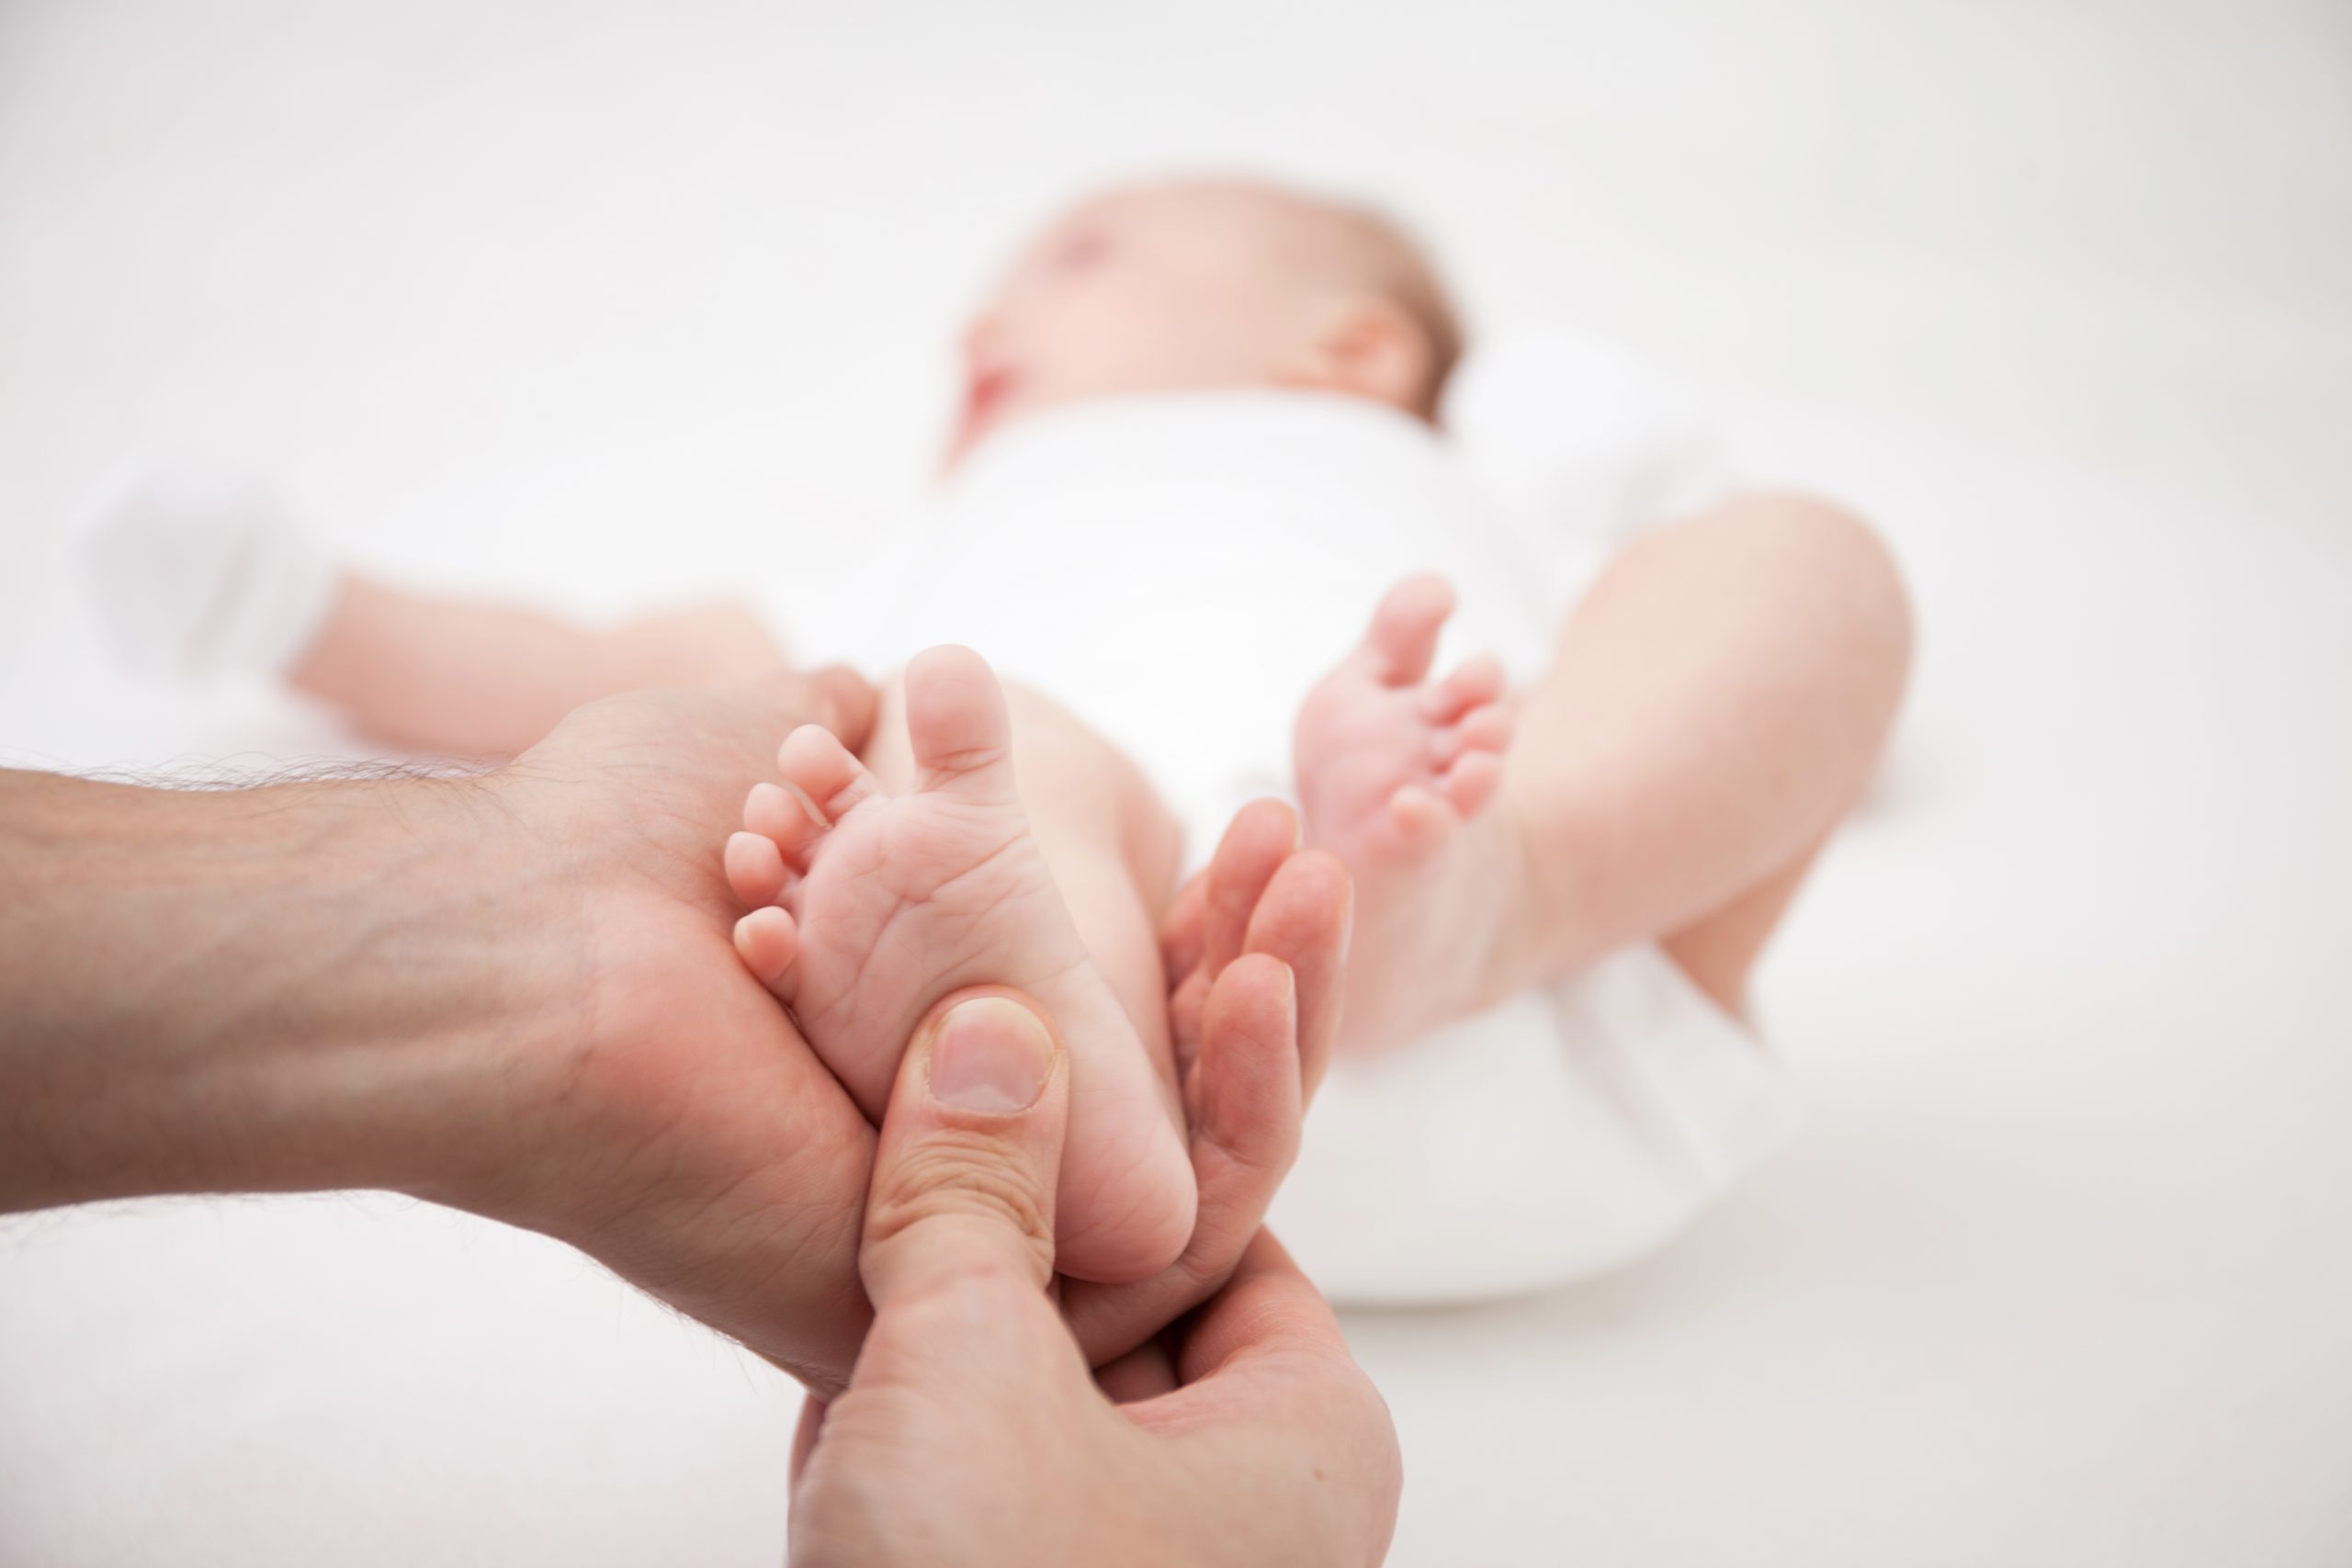 Pieds de bébé : quelles sont les anomalies les plus courantes ?